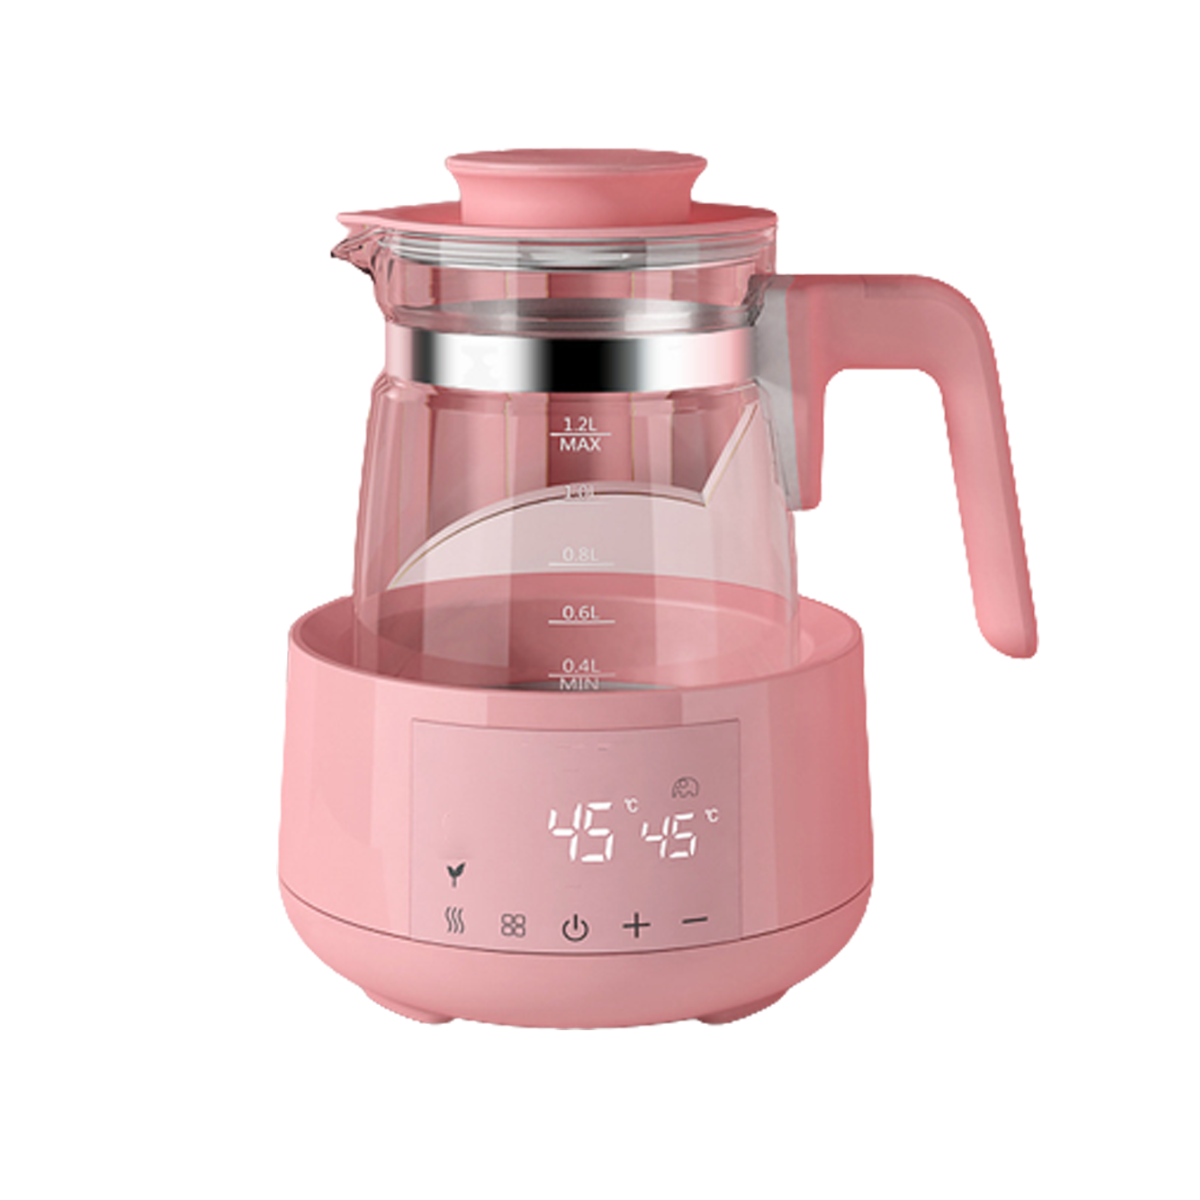 UWOT 24hThermostatischer Milchregler: sicheres Wasserkocher, rosa Material, 360° Temperaturregelung, drehbar,Rosa präzise